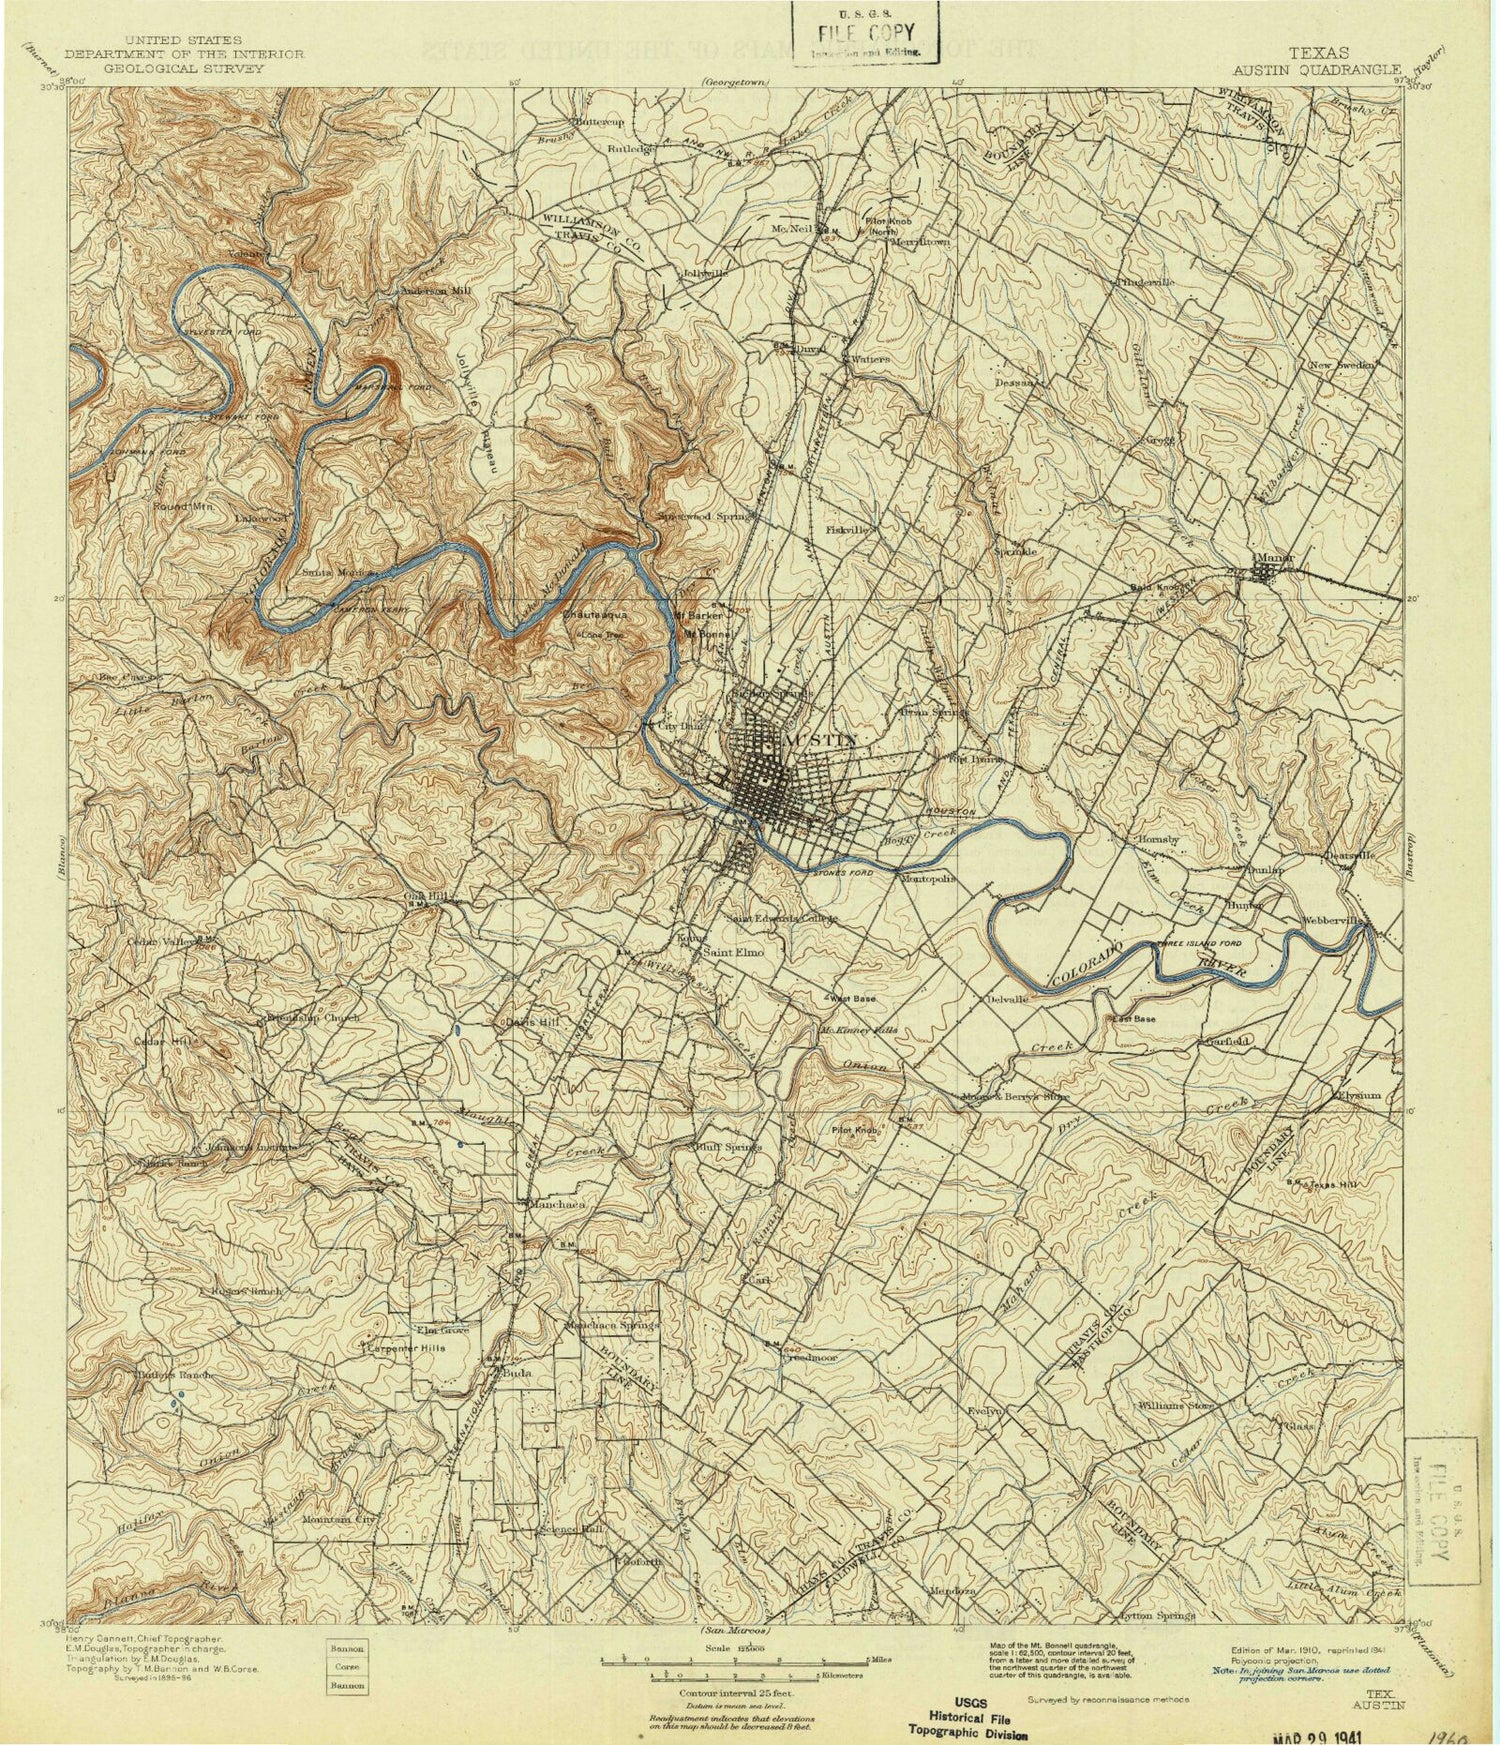 Historic 1910 Austin Texas 30'x30' Topo Map Image